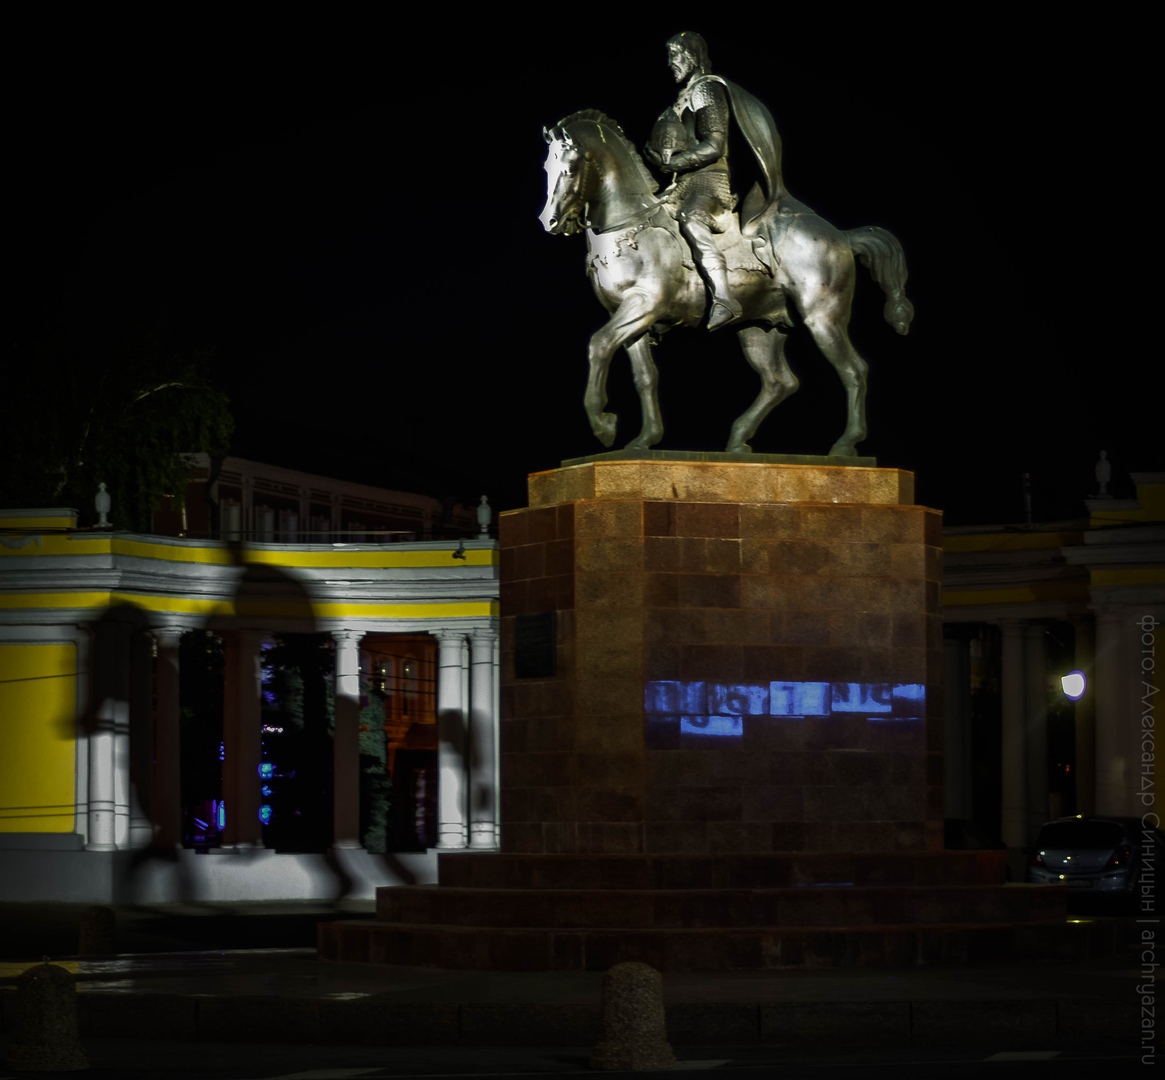 Памятник князю Олегу Рязанскому